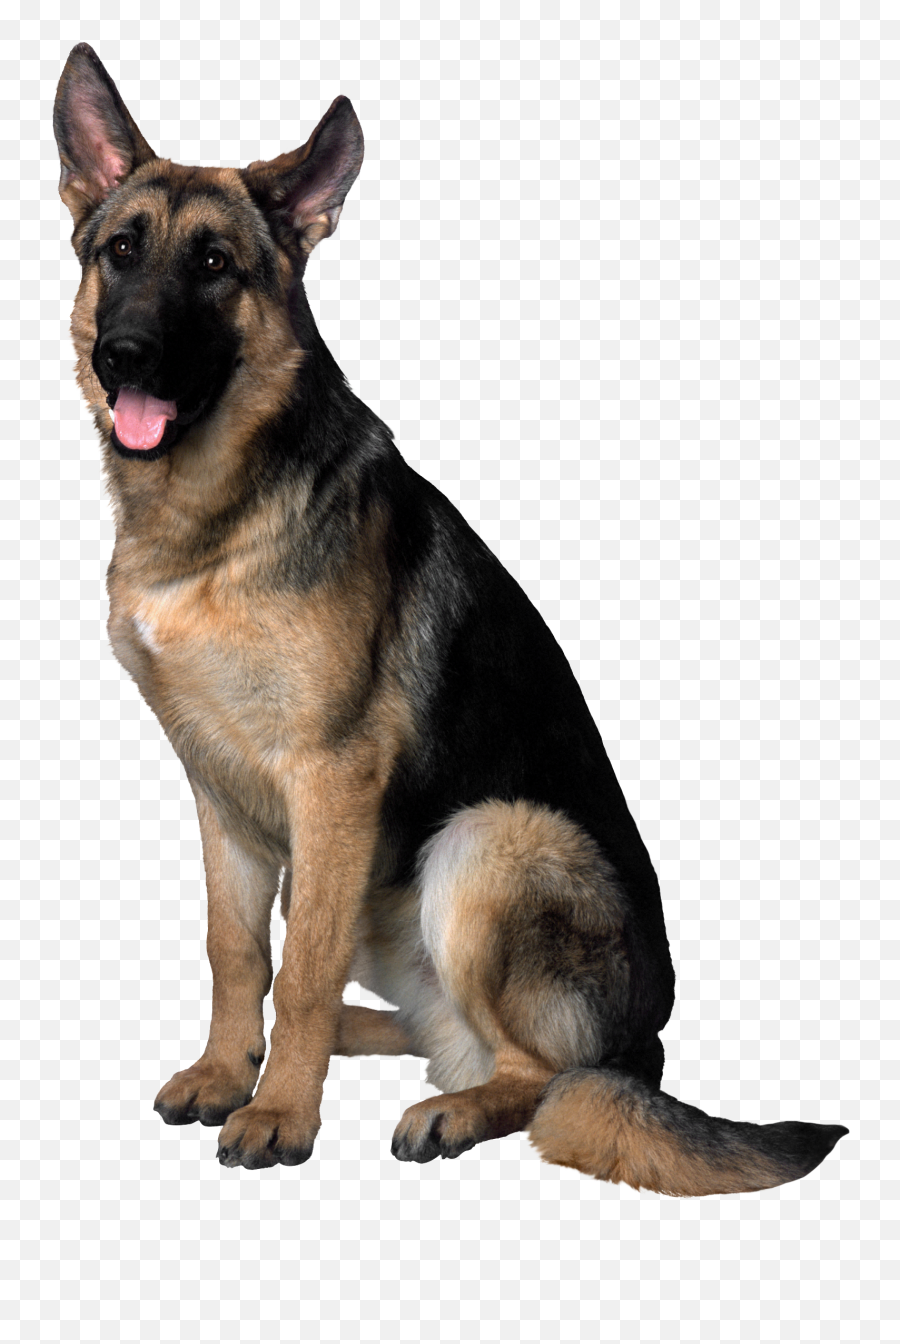 Pet Png Images Transparent Background - Dog Png Emoji,Dog Transparent Background